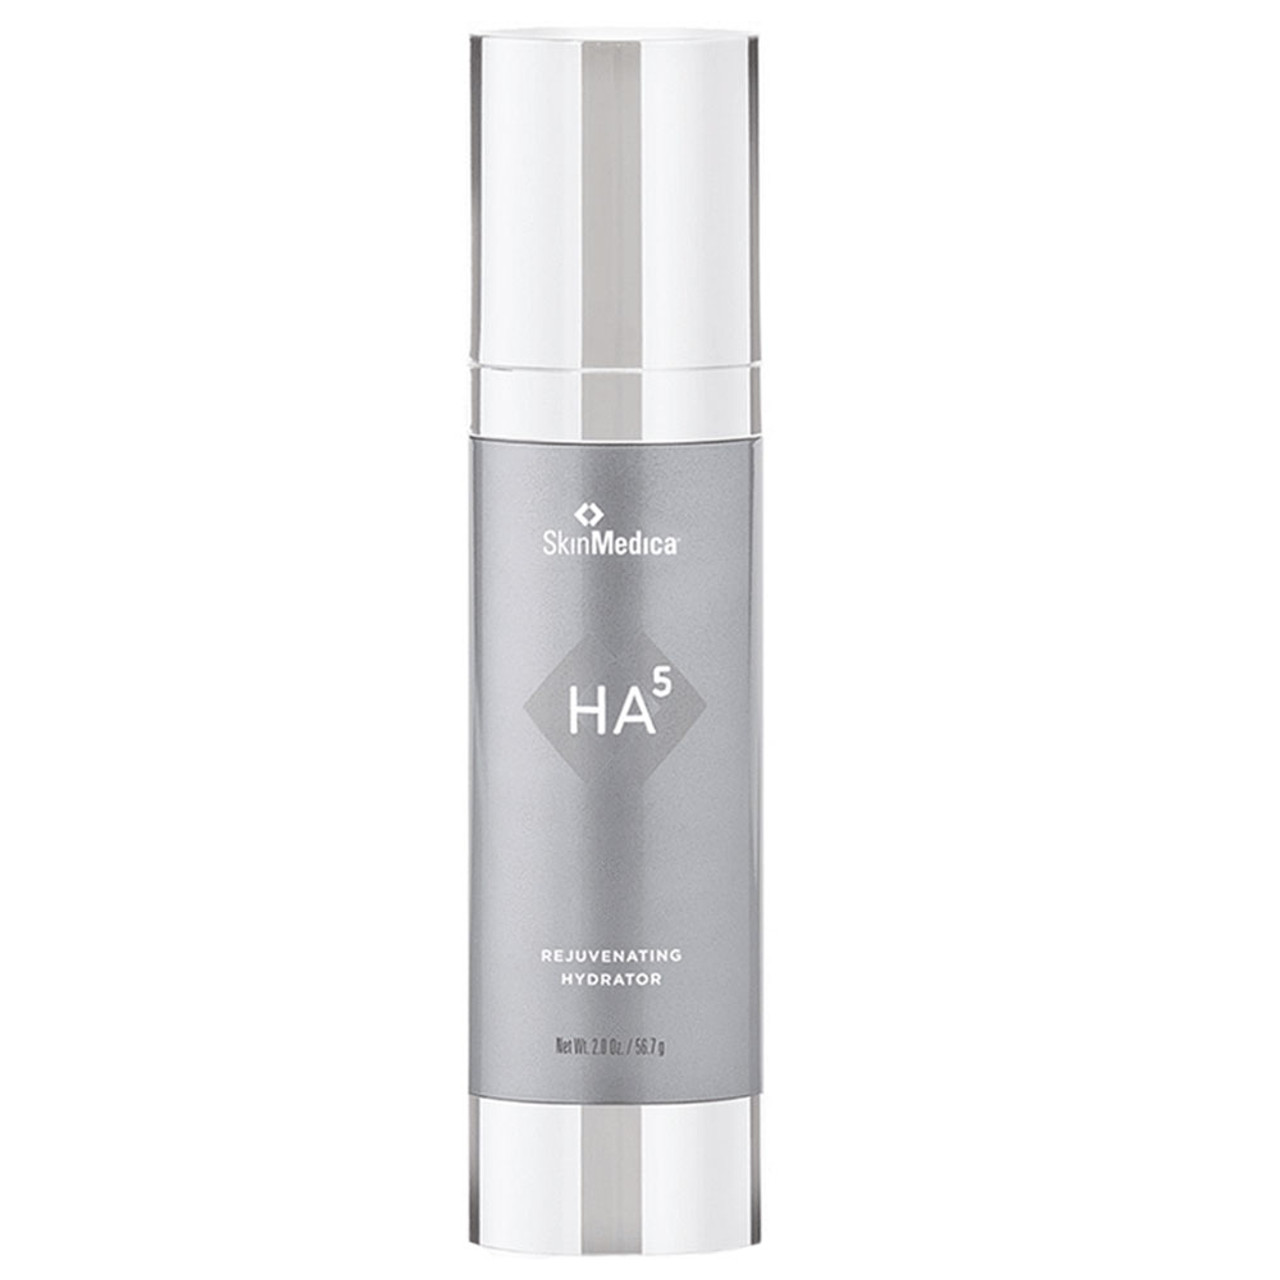 SkinMedica HA5 Rejuvenating Hydrator 1.0 oz